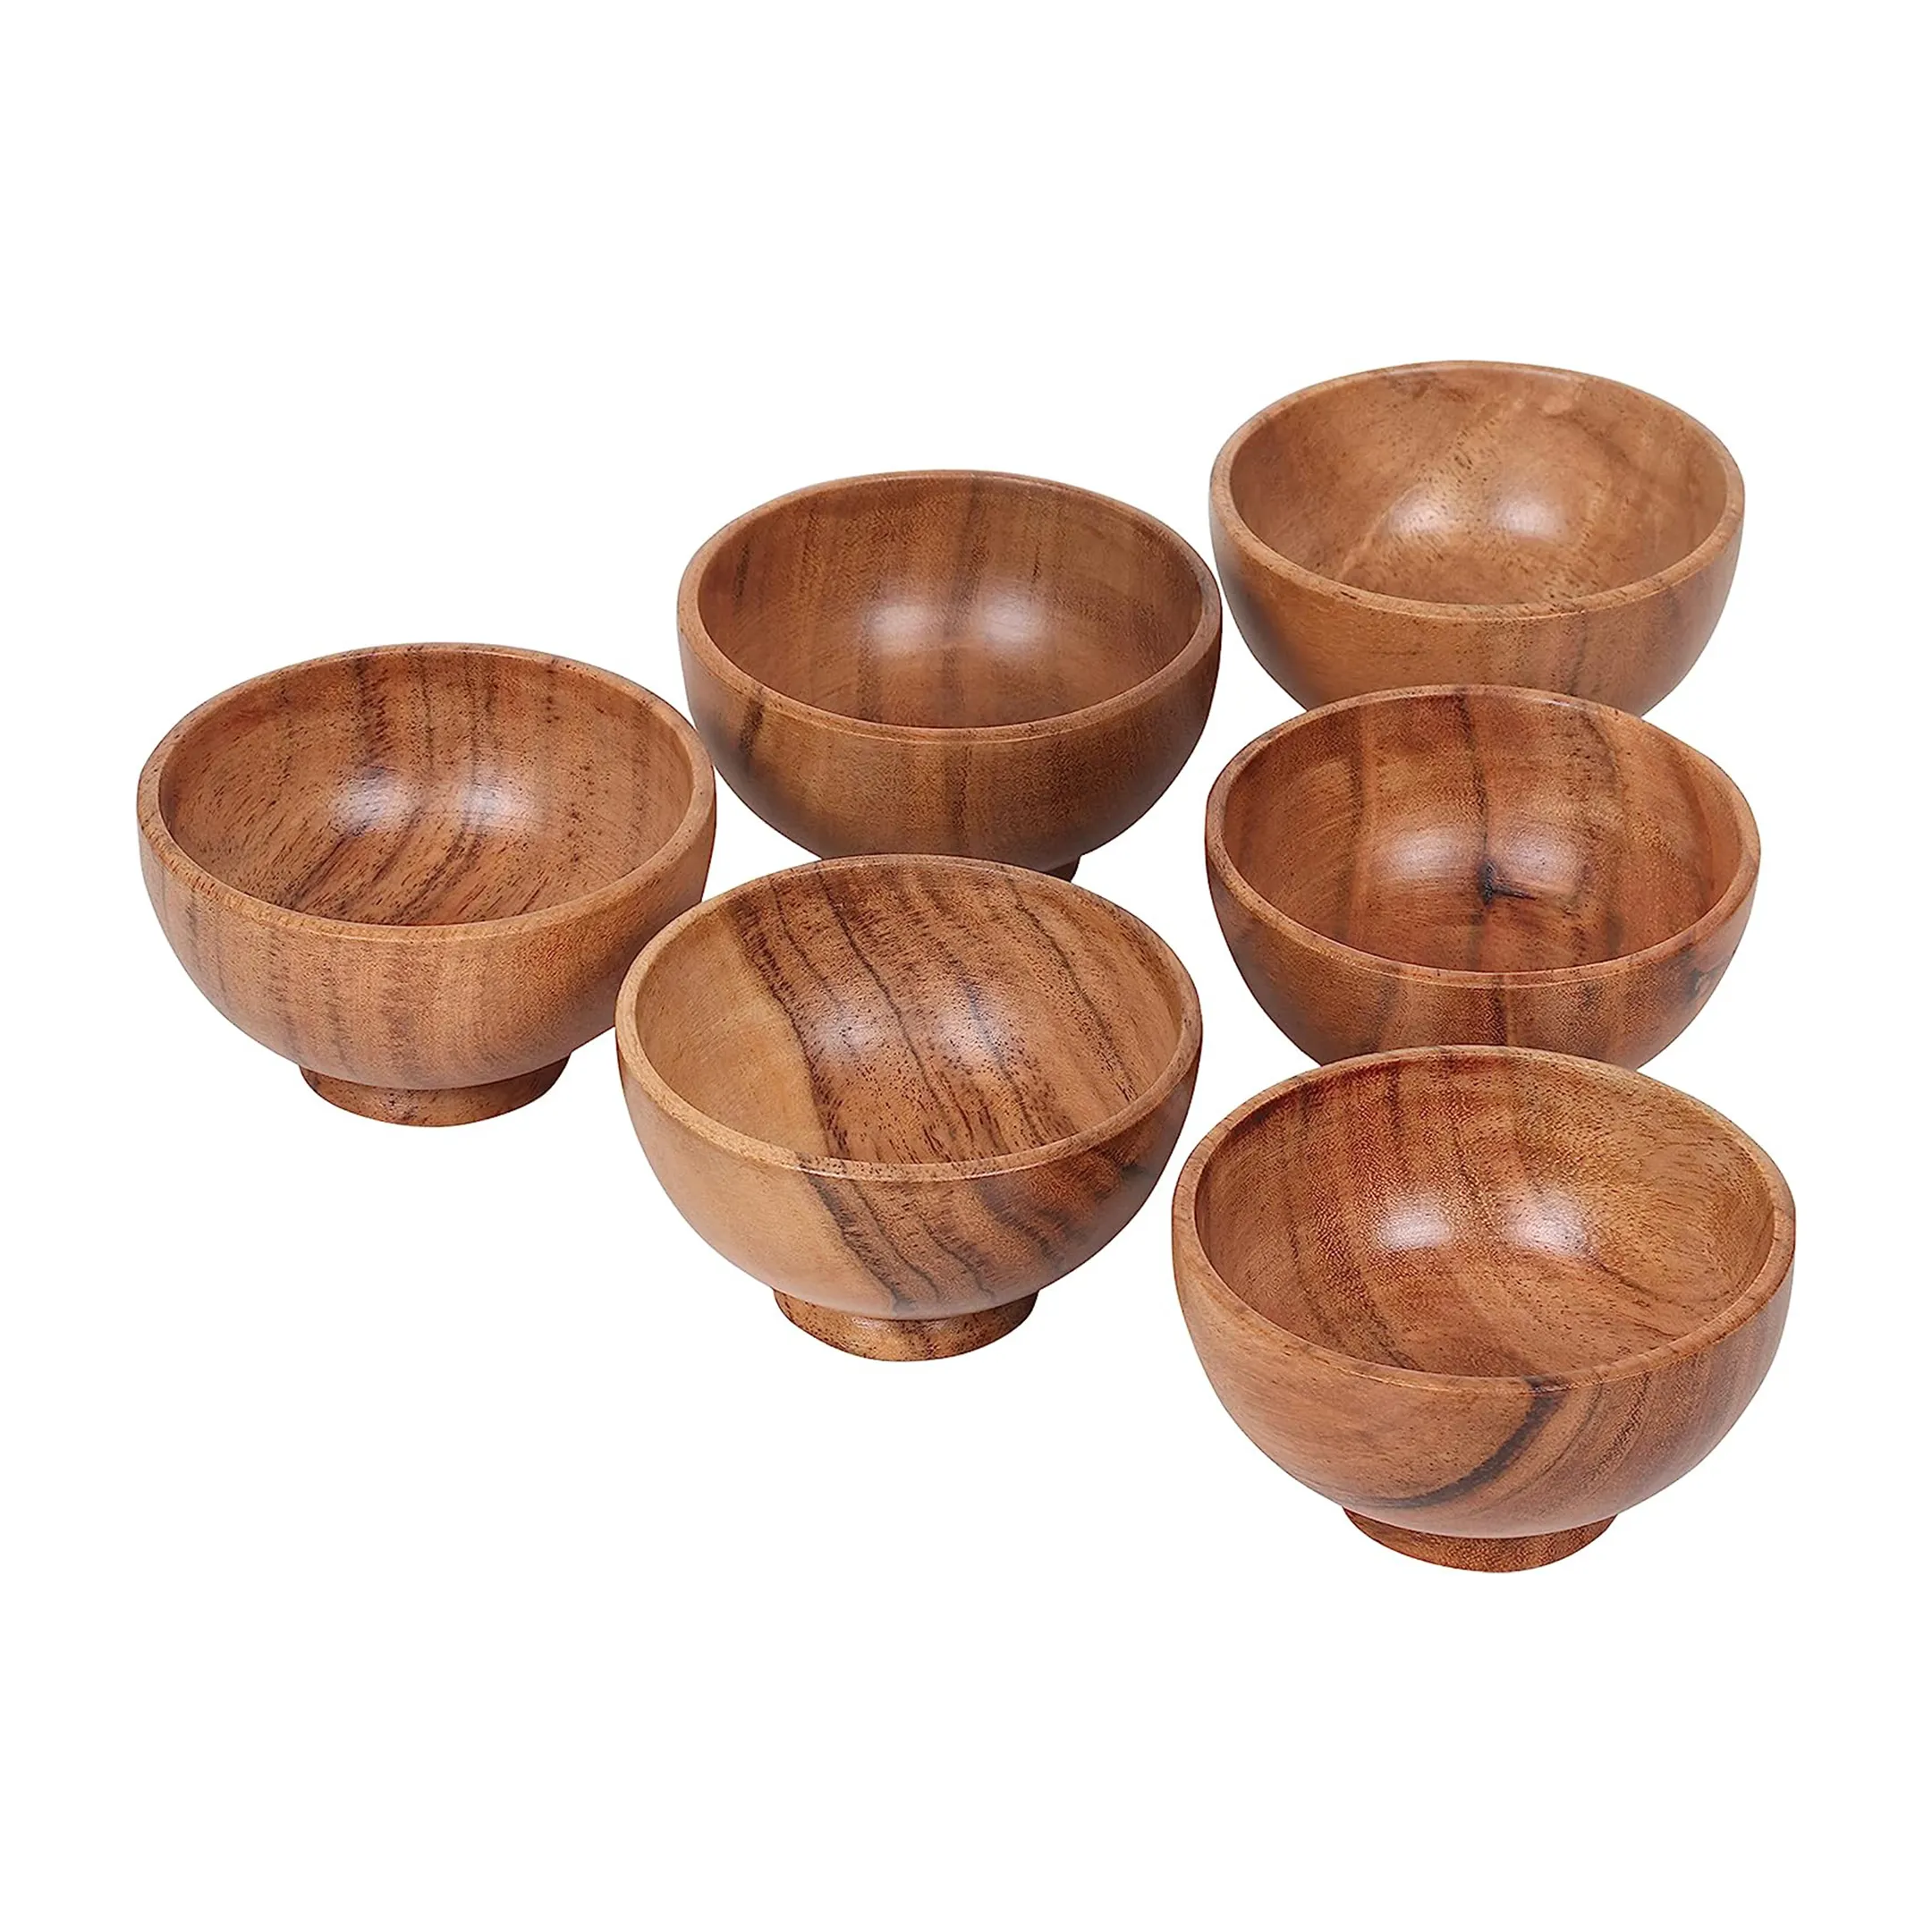 Petits bols en bois d'acacia en bois sculpté à la main Mini tasses de cuisine pour trempettes Sauce Noix Préparation Épices Condiments Charcuterie Accessoires